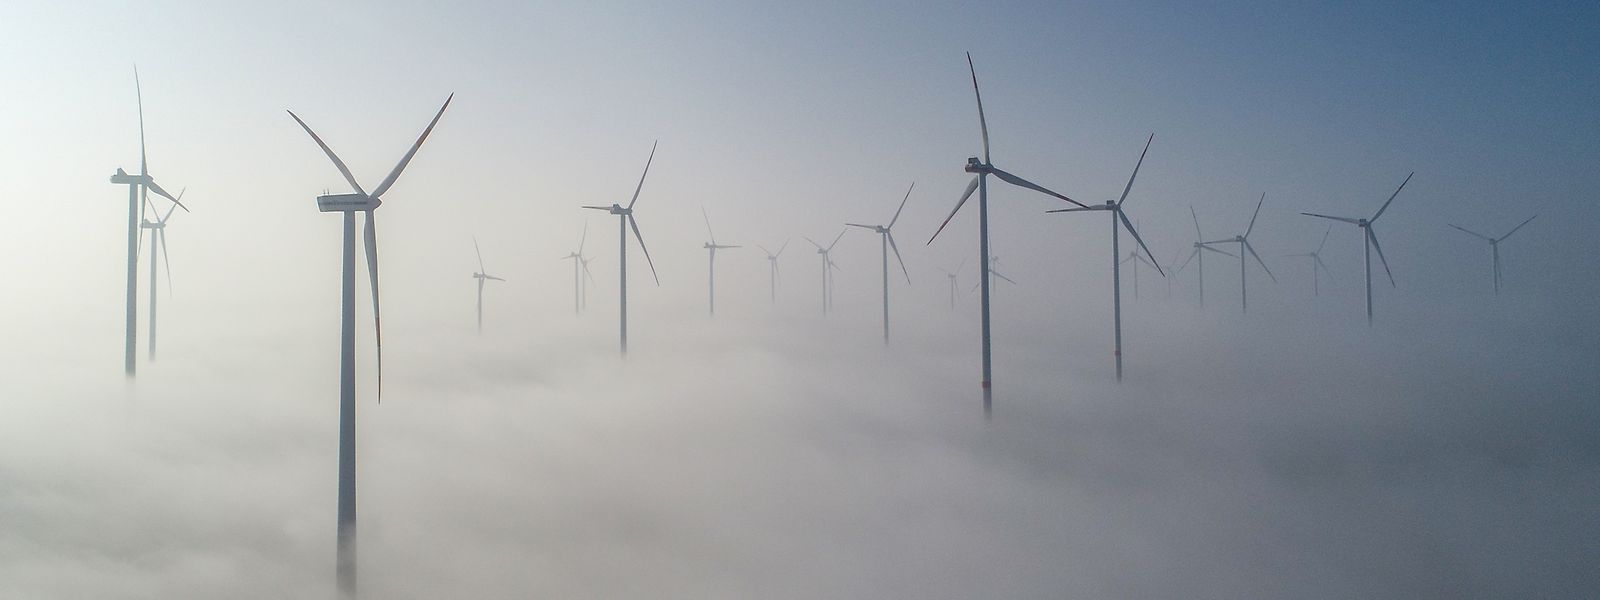 Die EU will erneuerbare Energien wie Windkraft noch stärker forcieren.